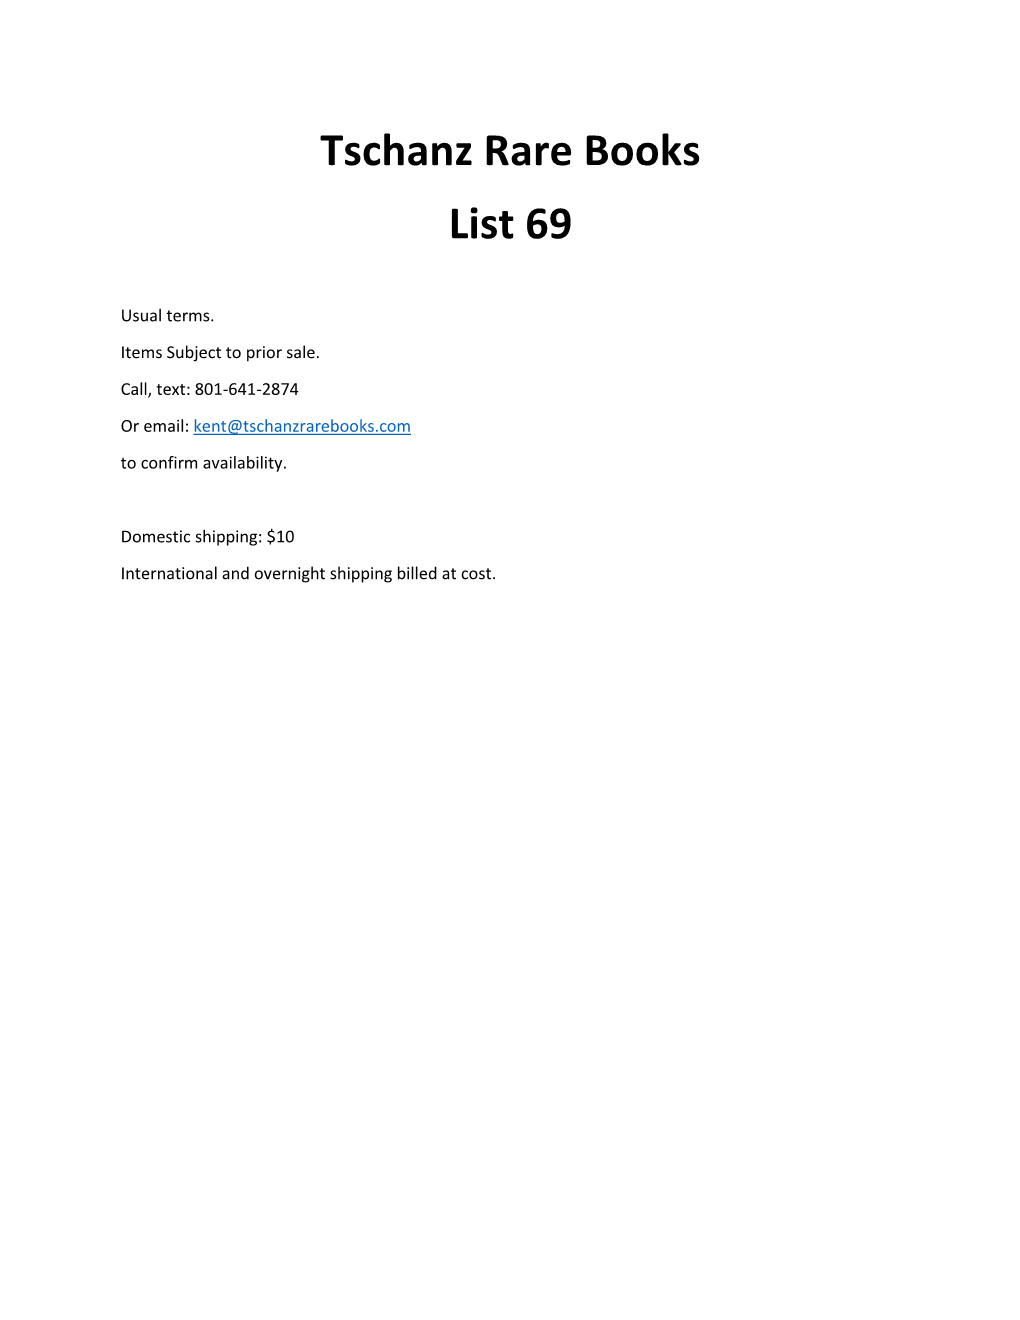 Tschanz Rare Books List 69